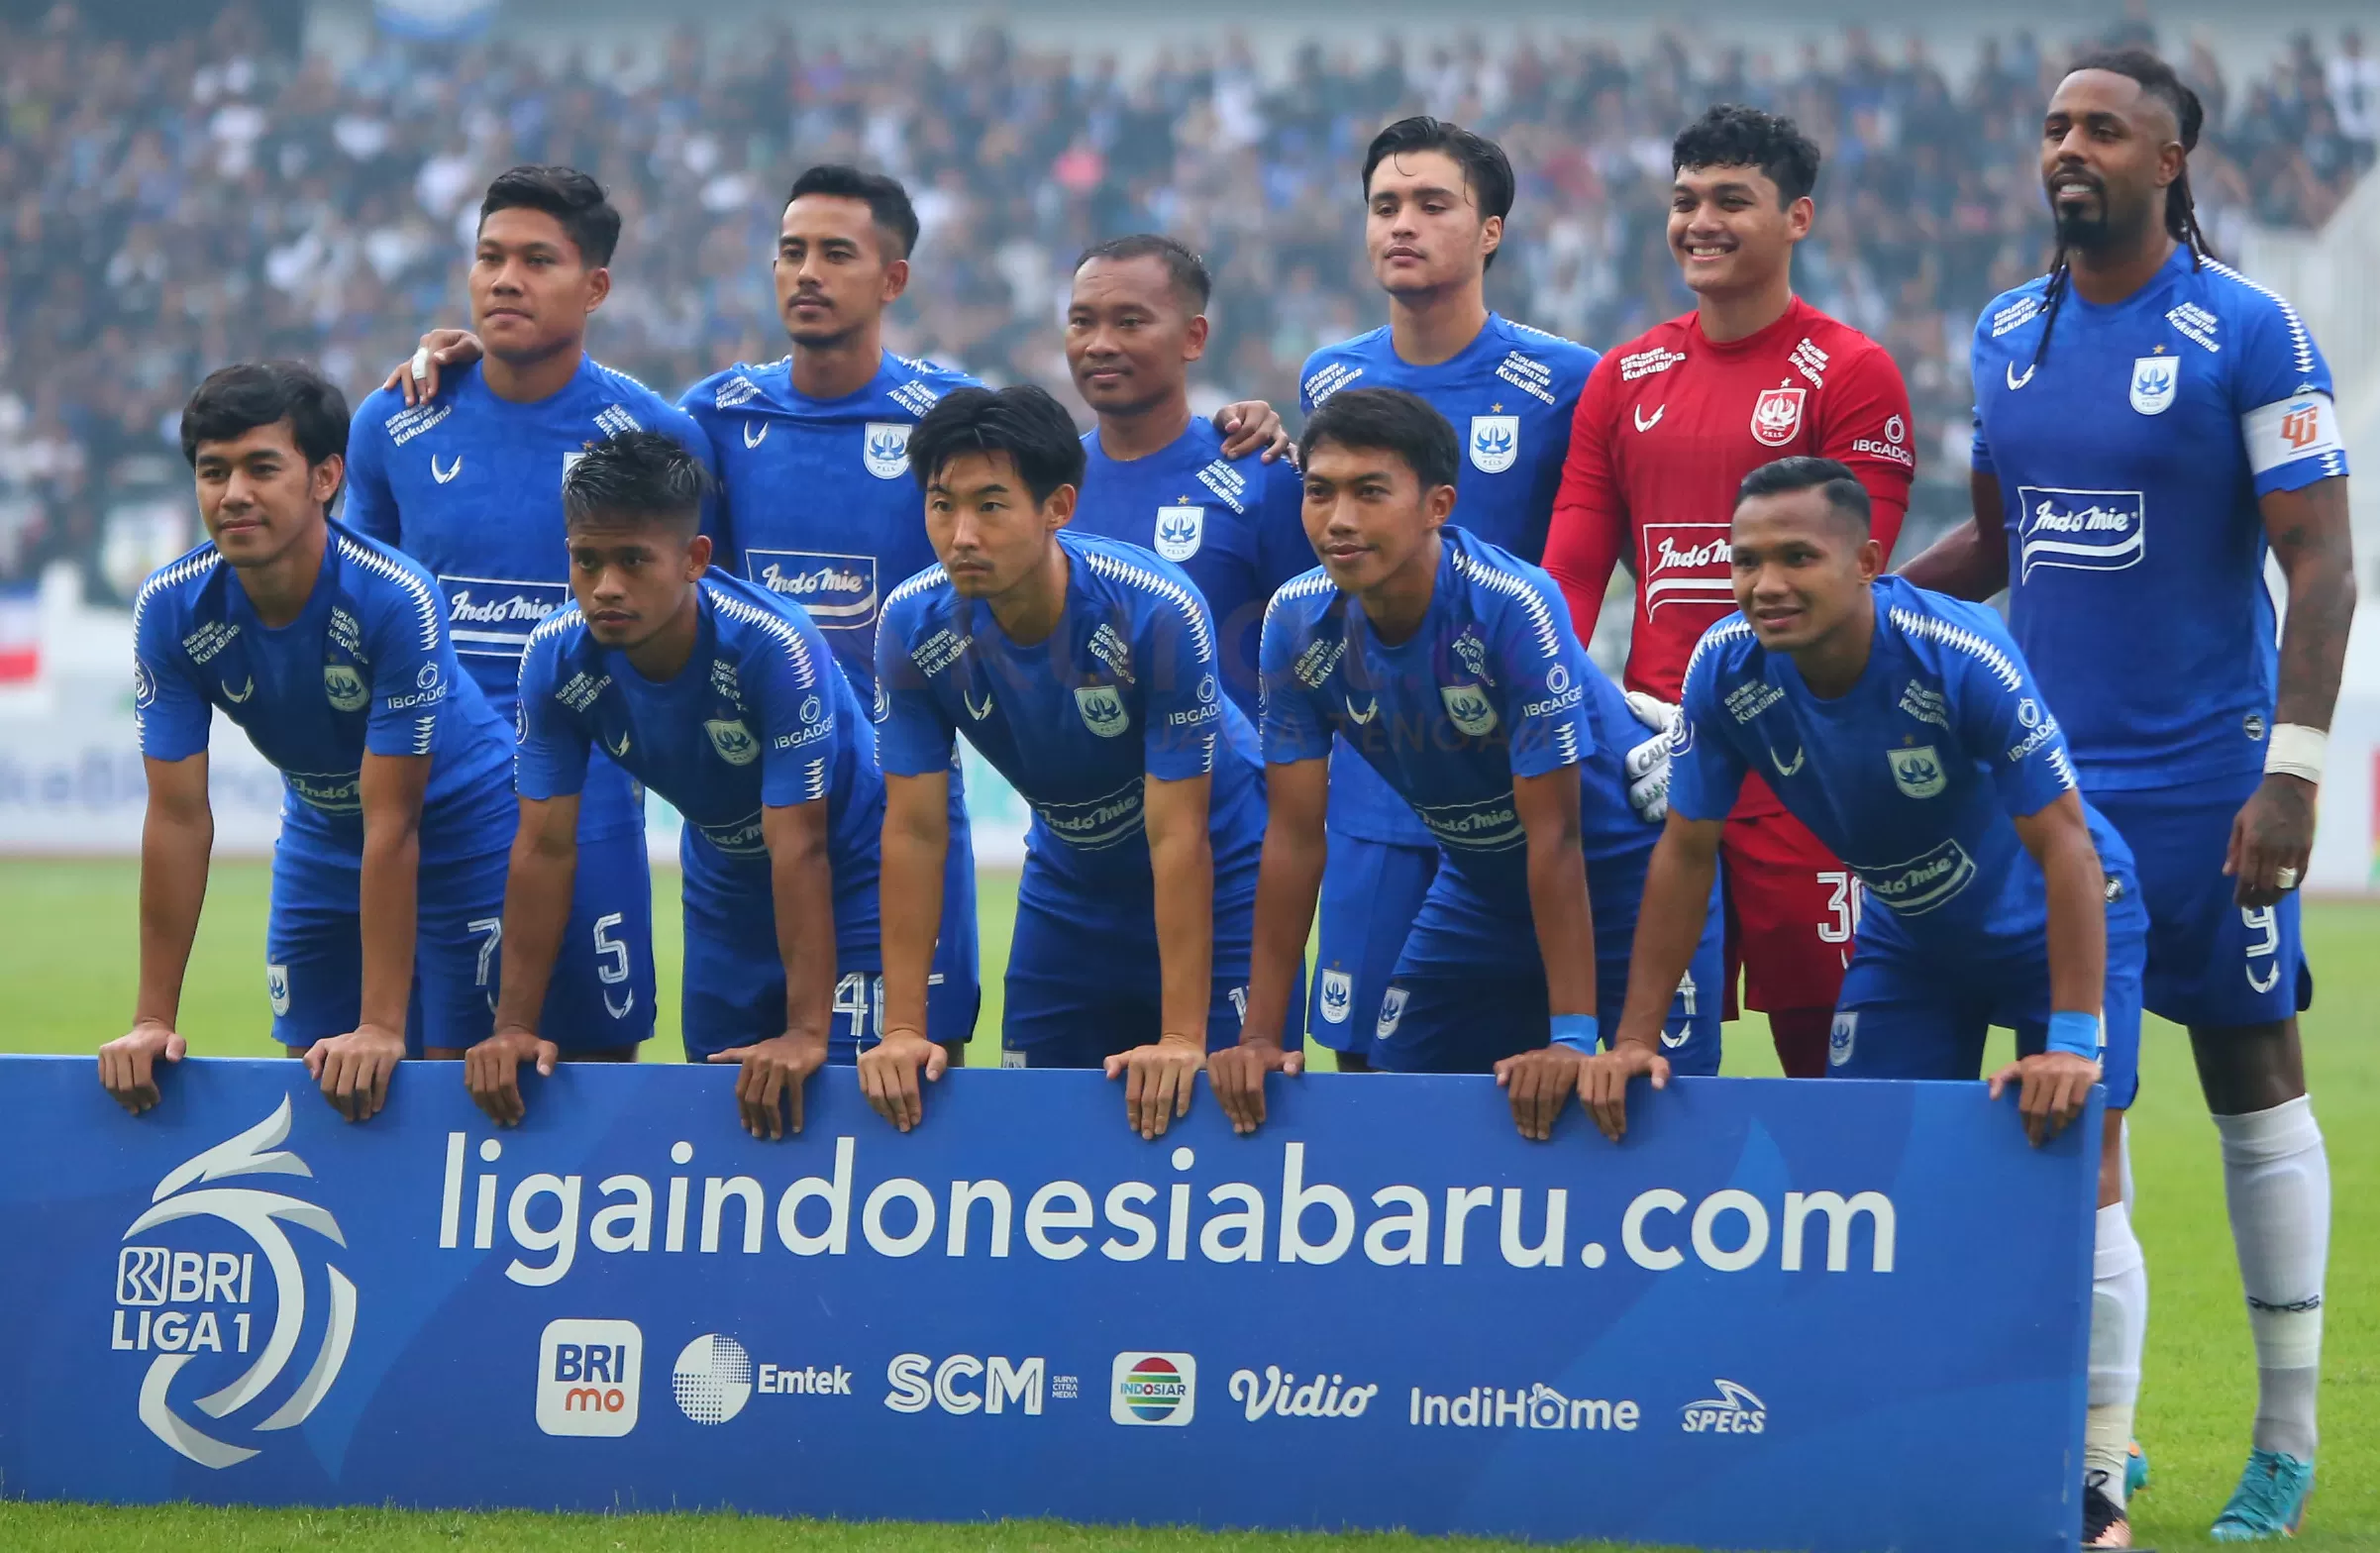 Yalla Shoot Score 808 Live Streaming Rans FC vs PSIS Semarang di Liga 1 Sore Ini Ilegal, Klik GRATIS Indosiar